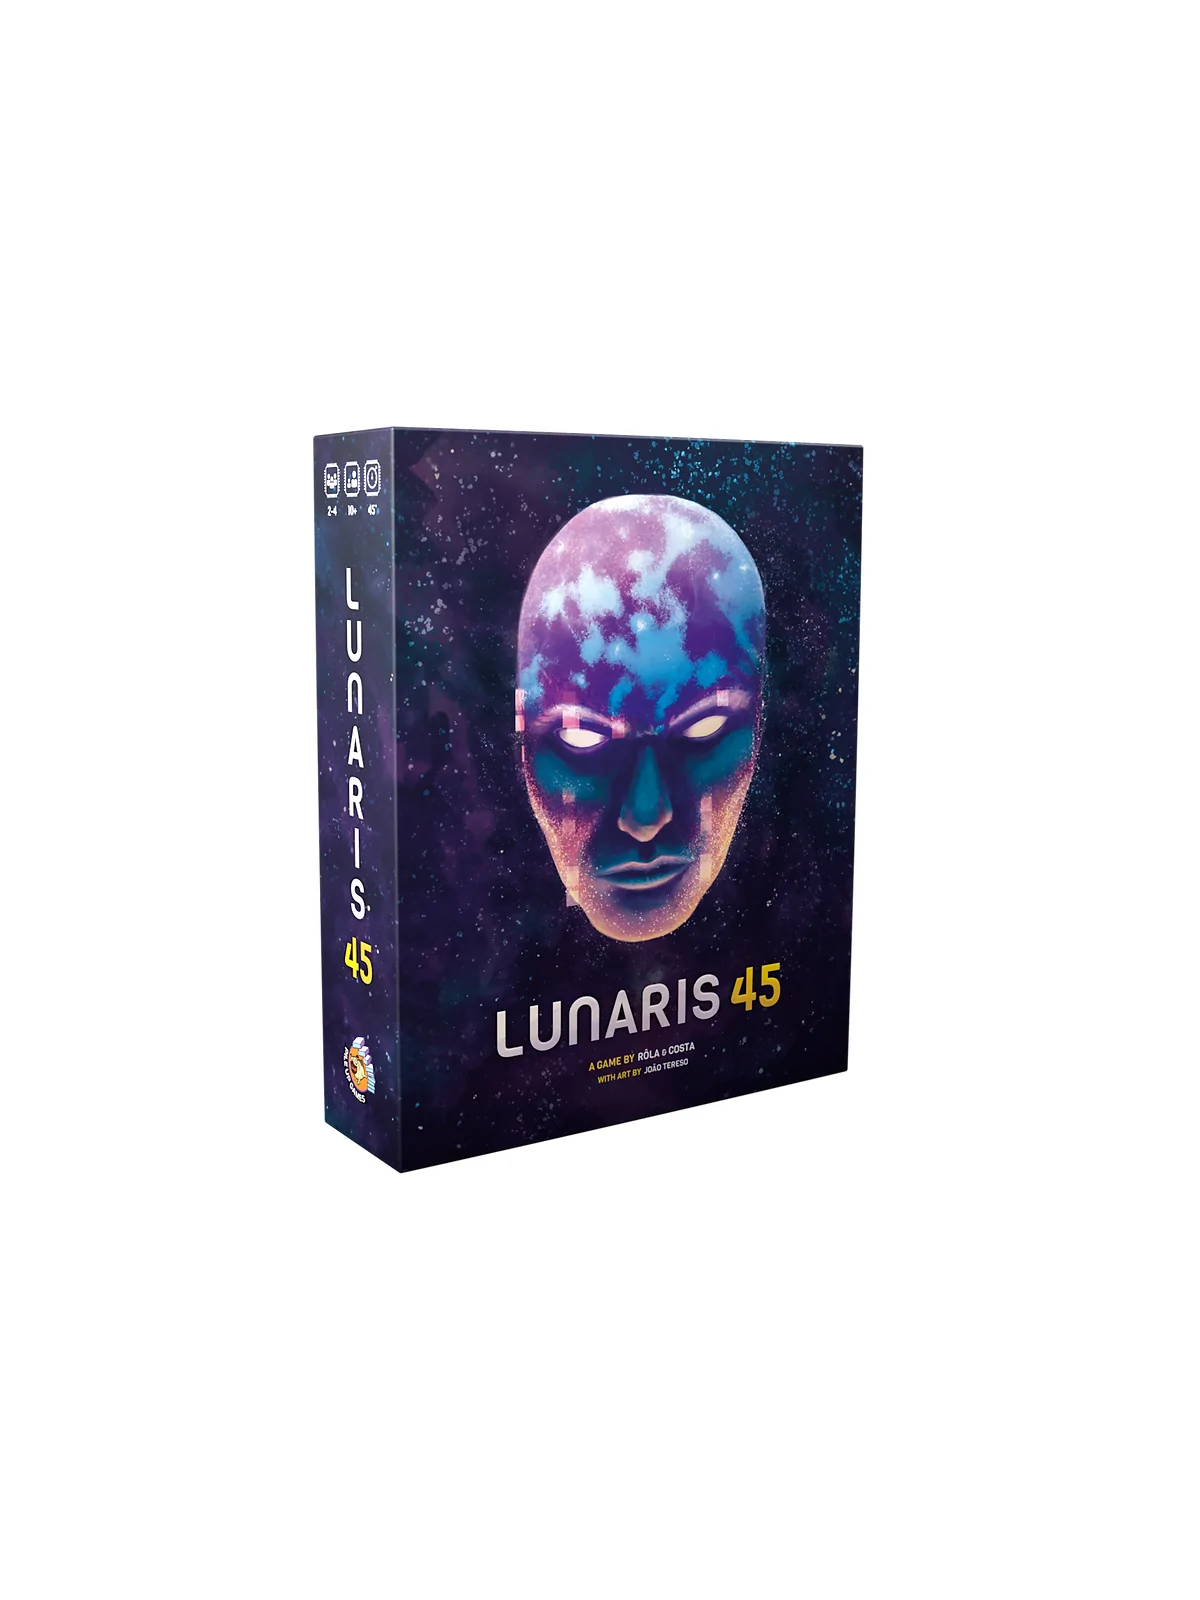 Comprar Lunaris 45 barato al mejor precio 22,46 € de Pile Up Games